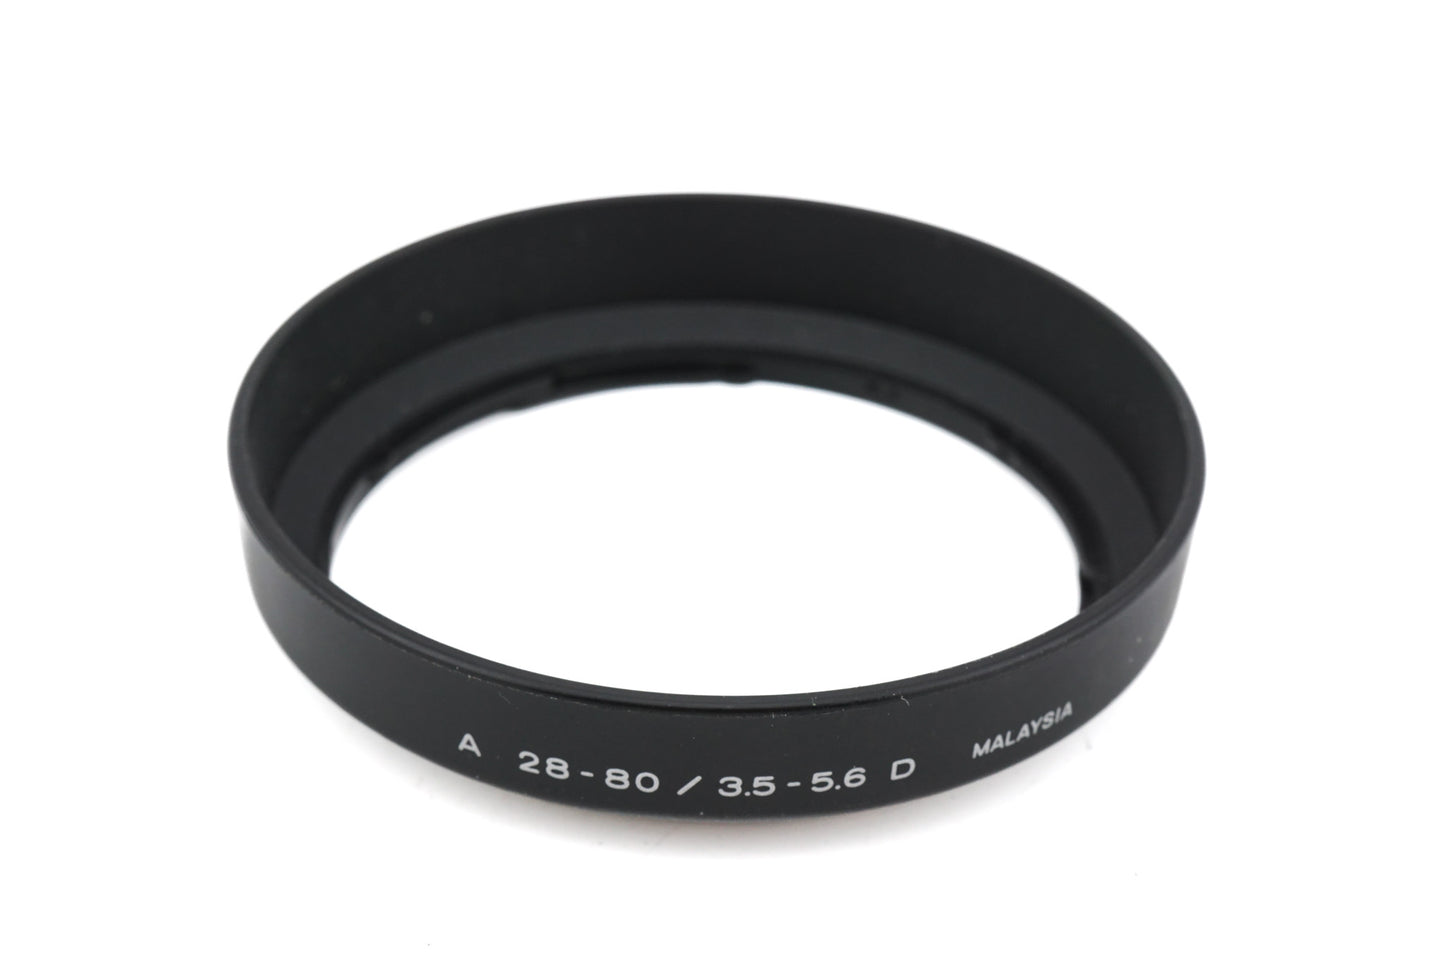 Minolta Plastic Lens Hood for 28-80mm 3.5-5.6 D